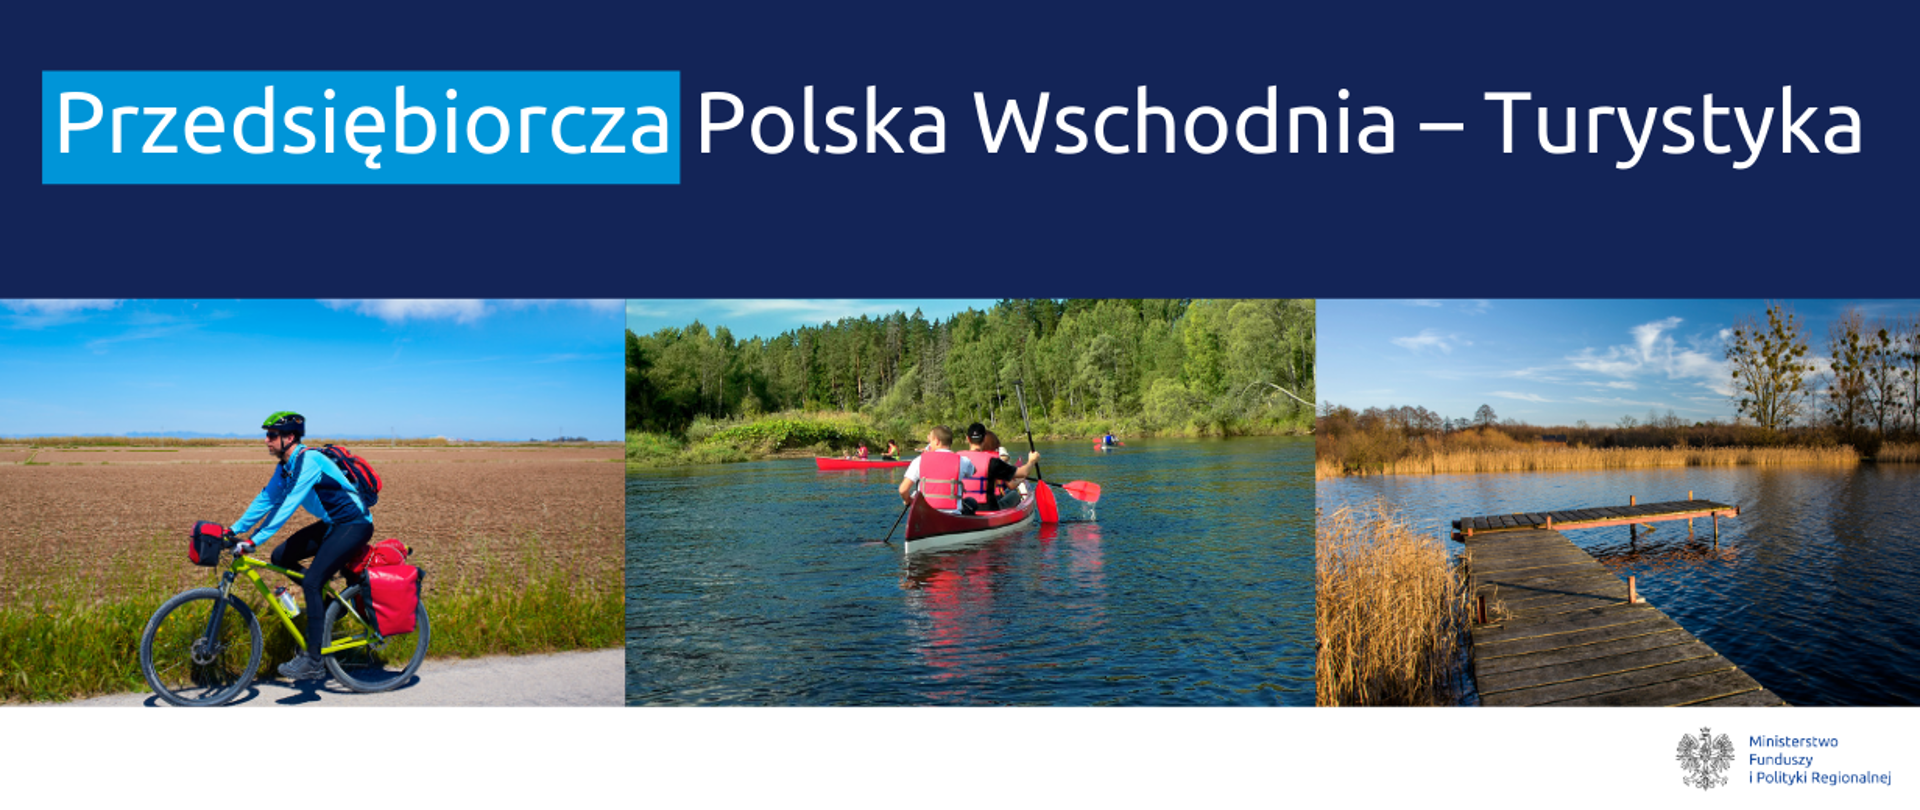 Grafika z tekstem Przedsiębiorcza Polska Wschodnia - Turystyka oraz ze zdjęciami osoby jadącej na rowerze, trzech osób płynących na kajaku i pomostu na jeziorze.